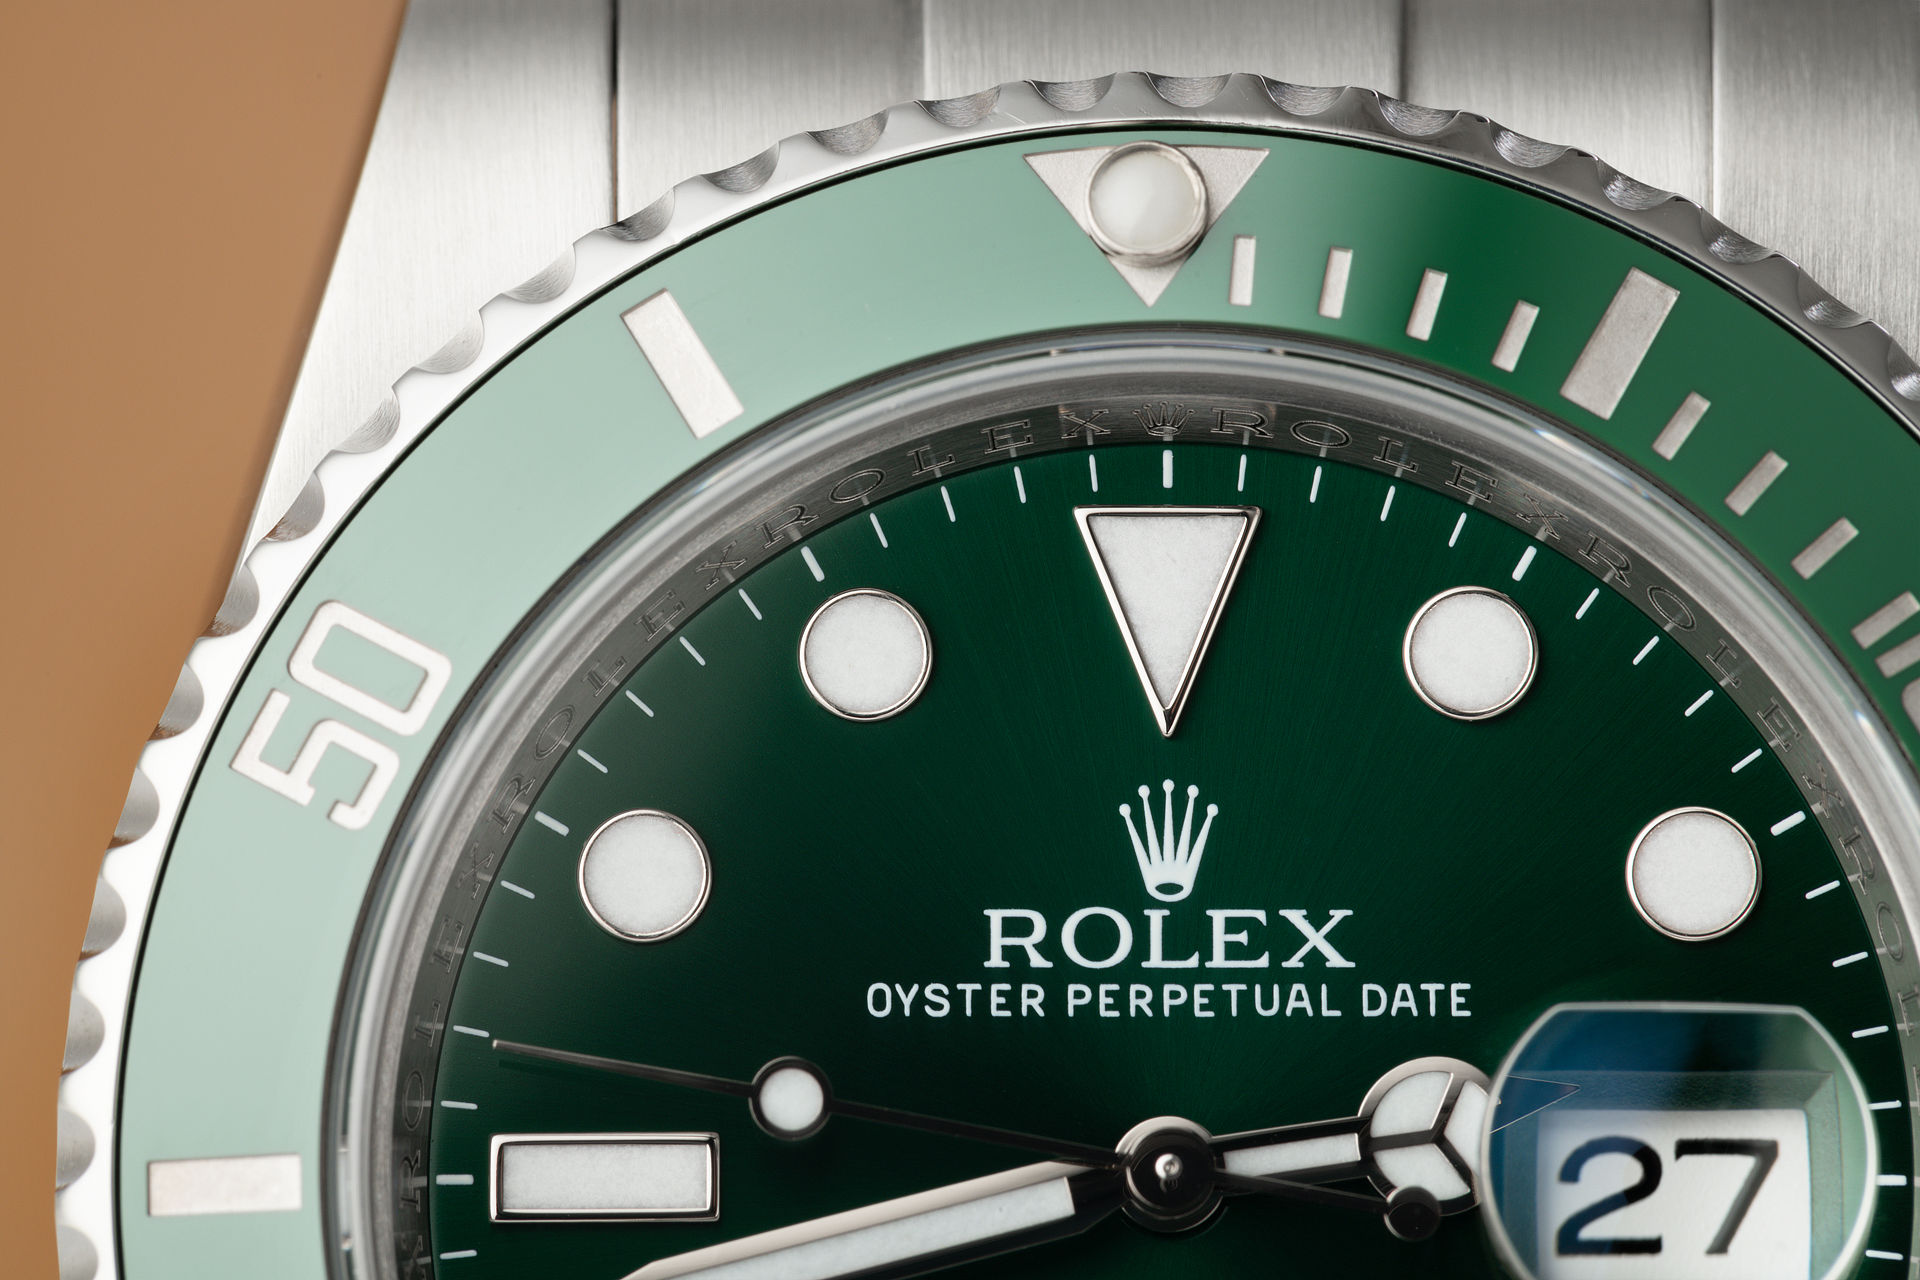 ref 116610LV | Ceramic 'Full Set' | Rolex Submariner Date